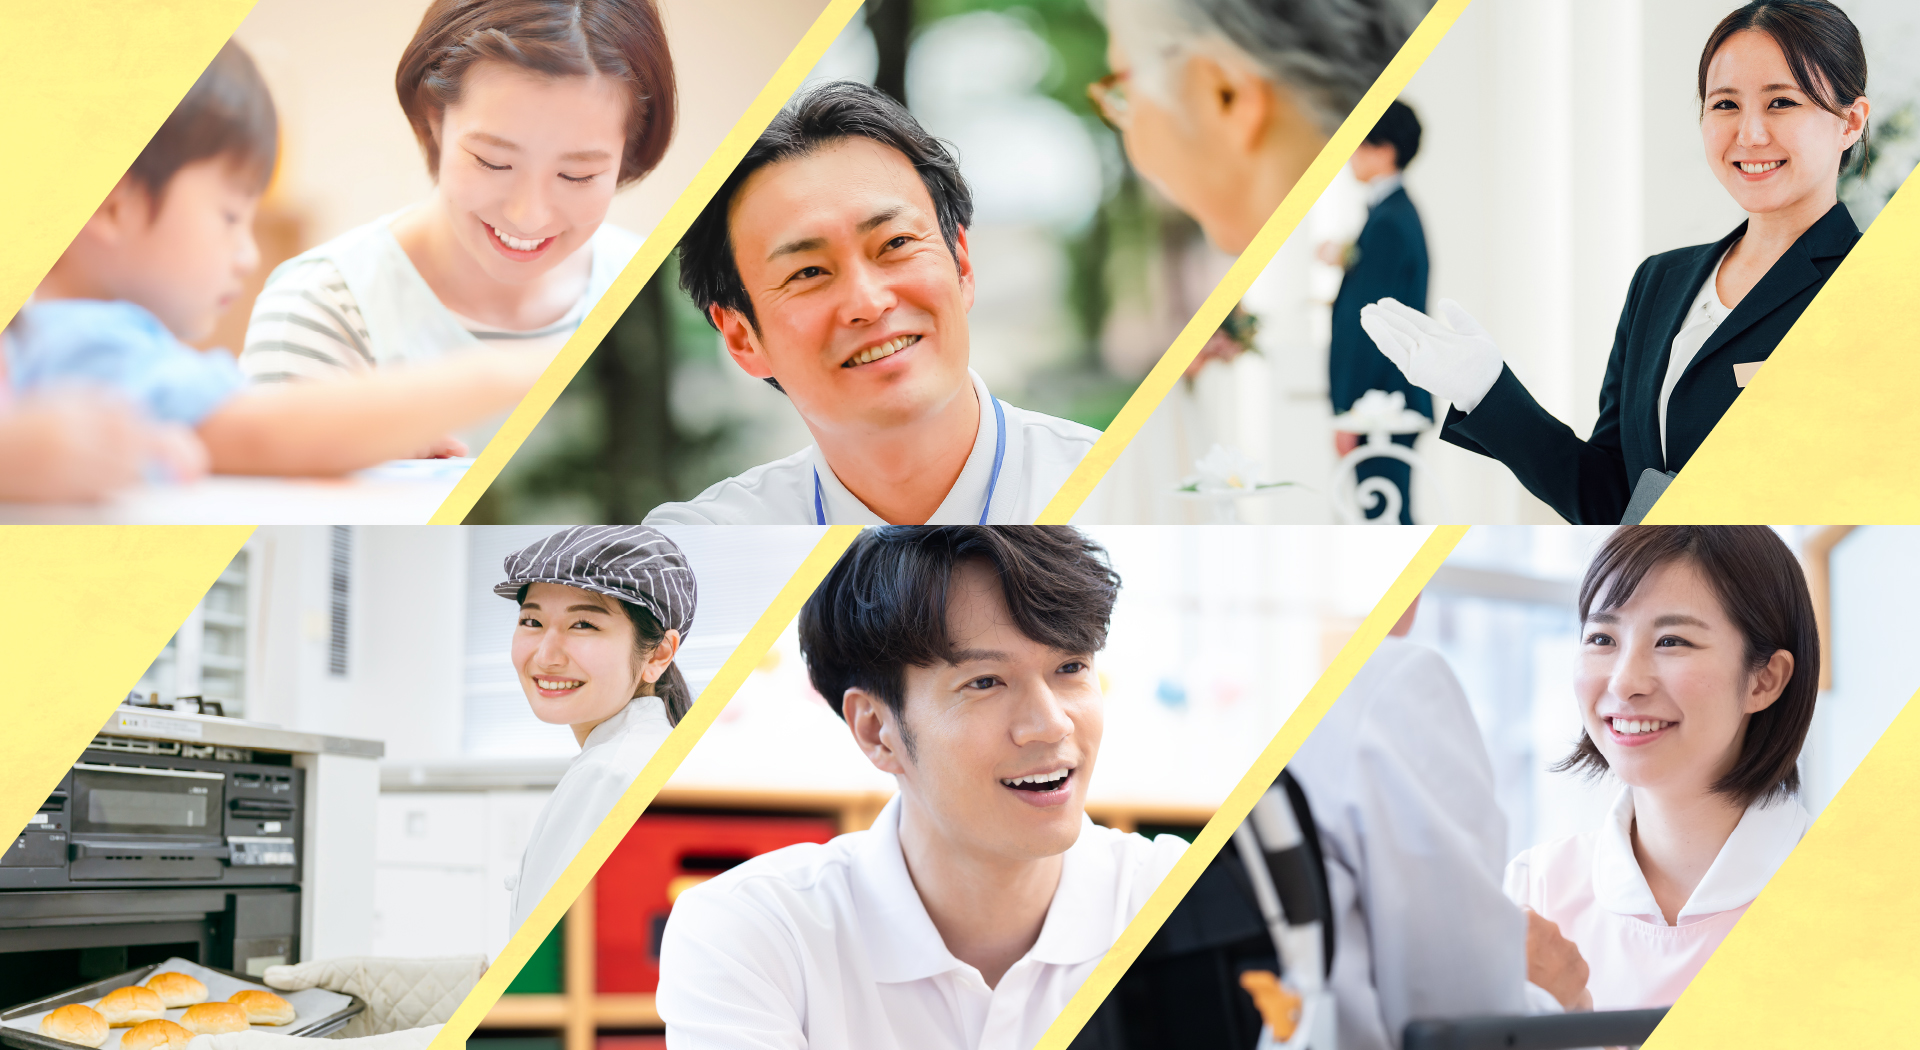 総合福祉サービス 株式会社リボーン 上越市 糸魚川市 高齢社会のニーズに応える 豊かで優しい笑顔 信頼構築につながるための技術 地域社会への貢献を目指します